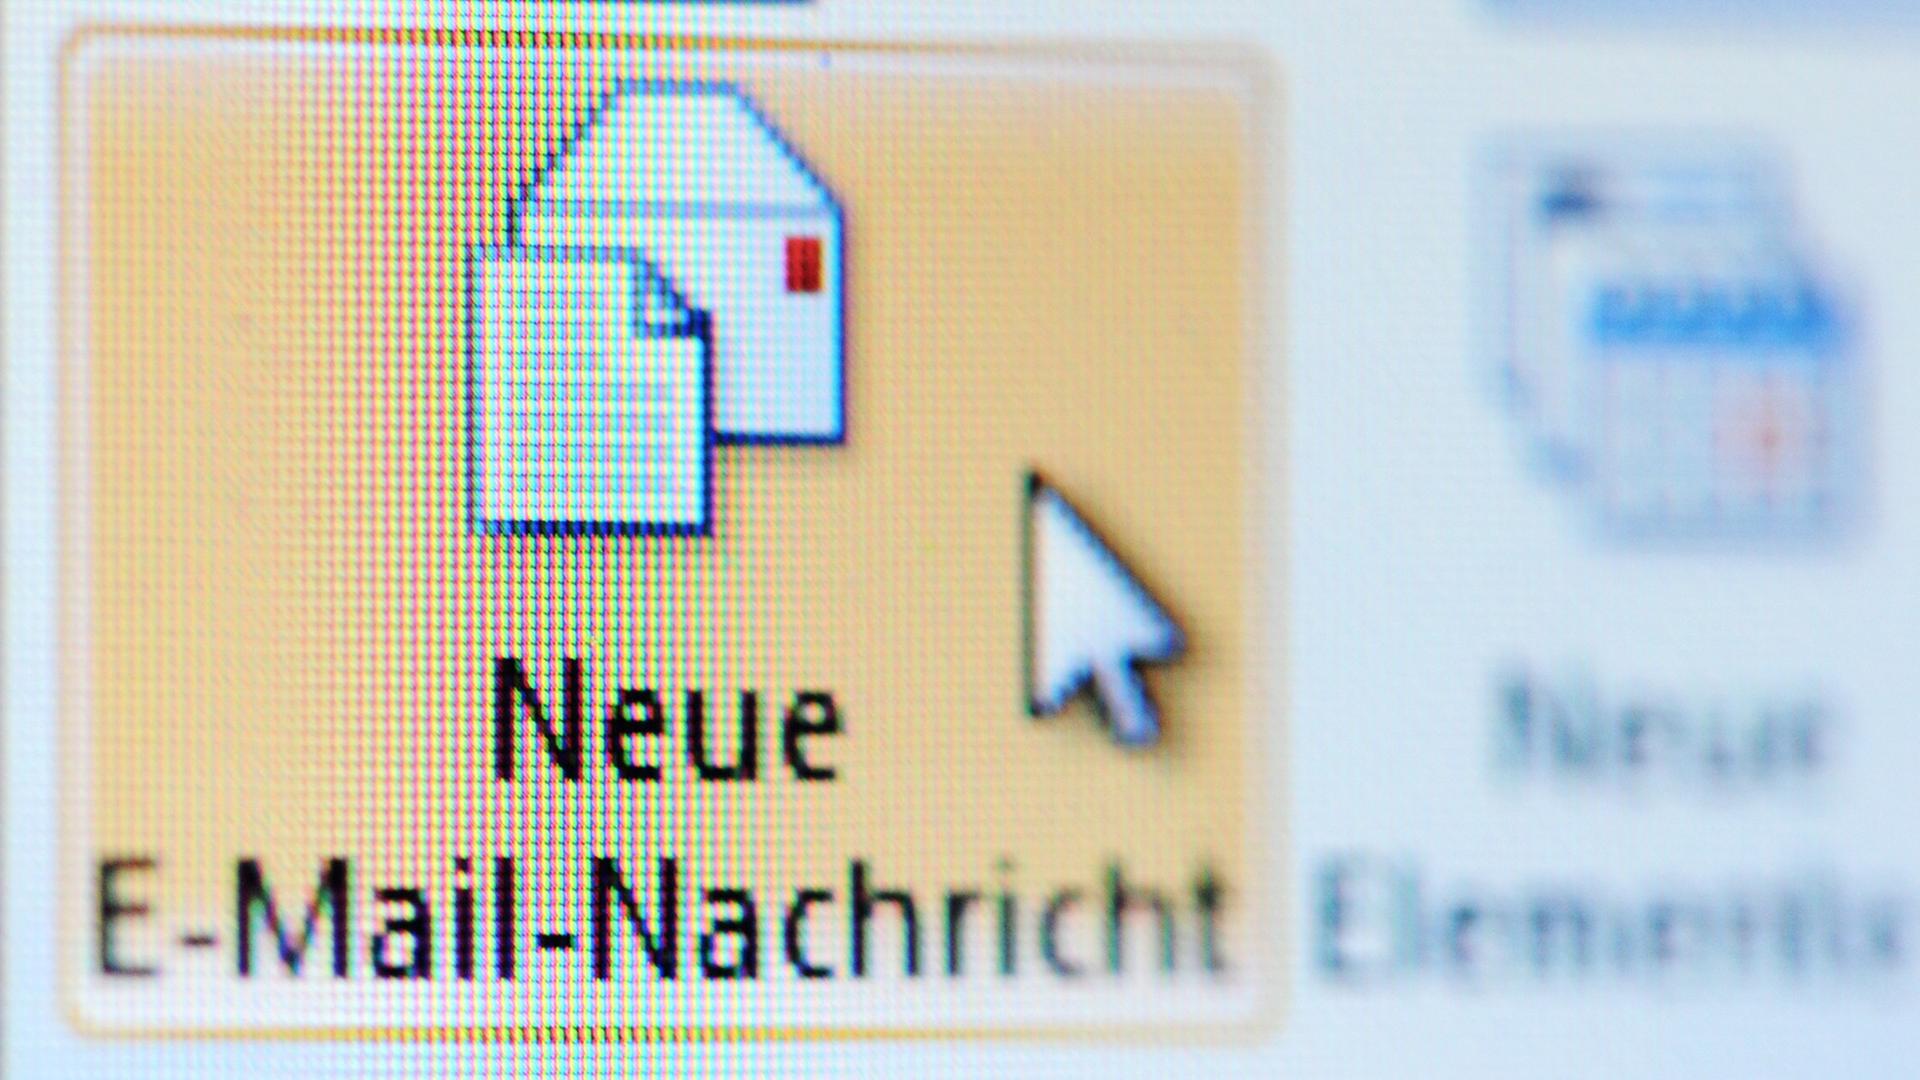 Das Symbol "Neue E-Mail-Nachricht" wird auf einem Computer Monitor angezeigt.